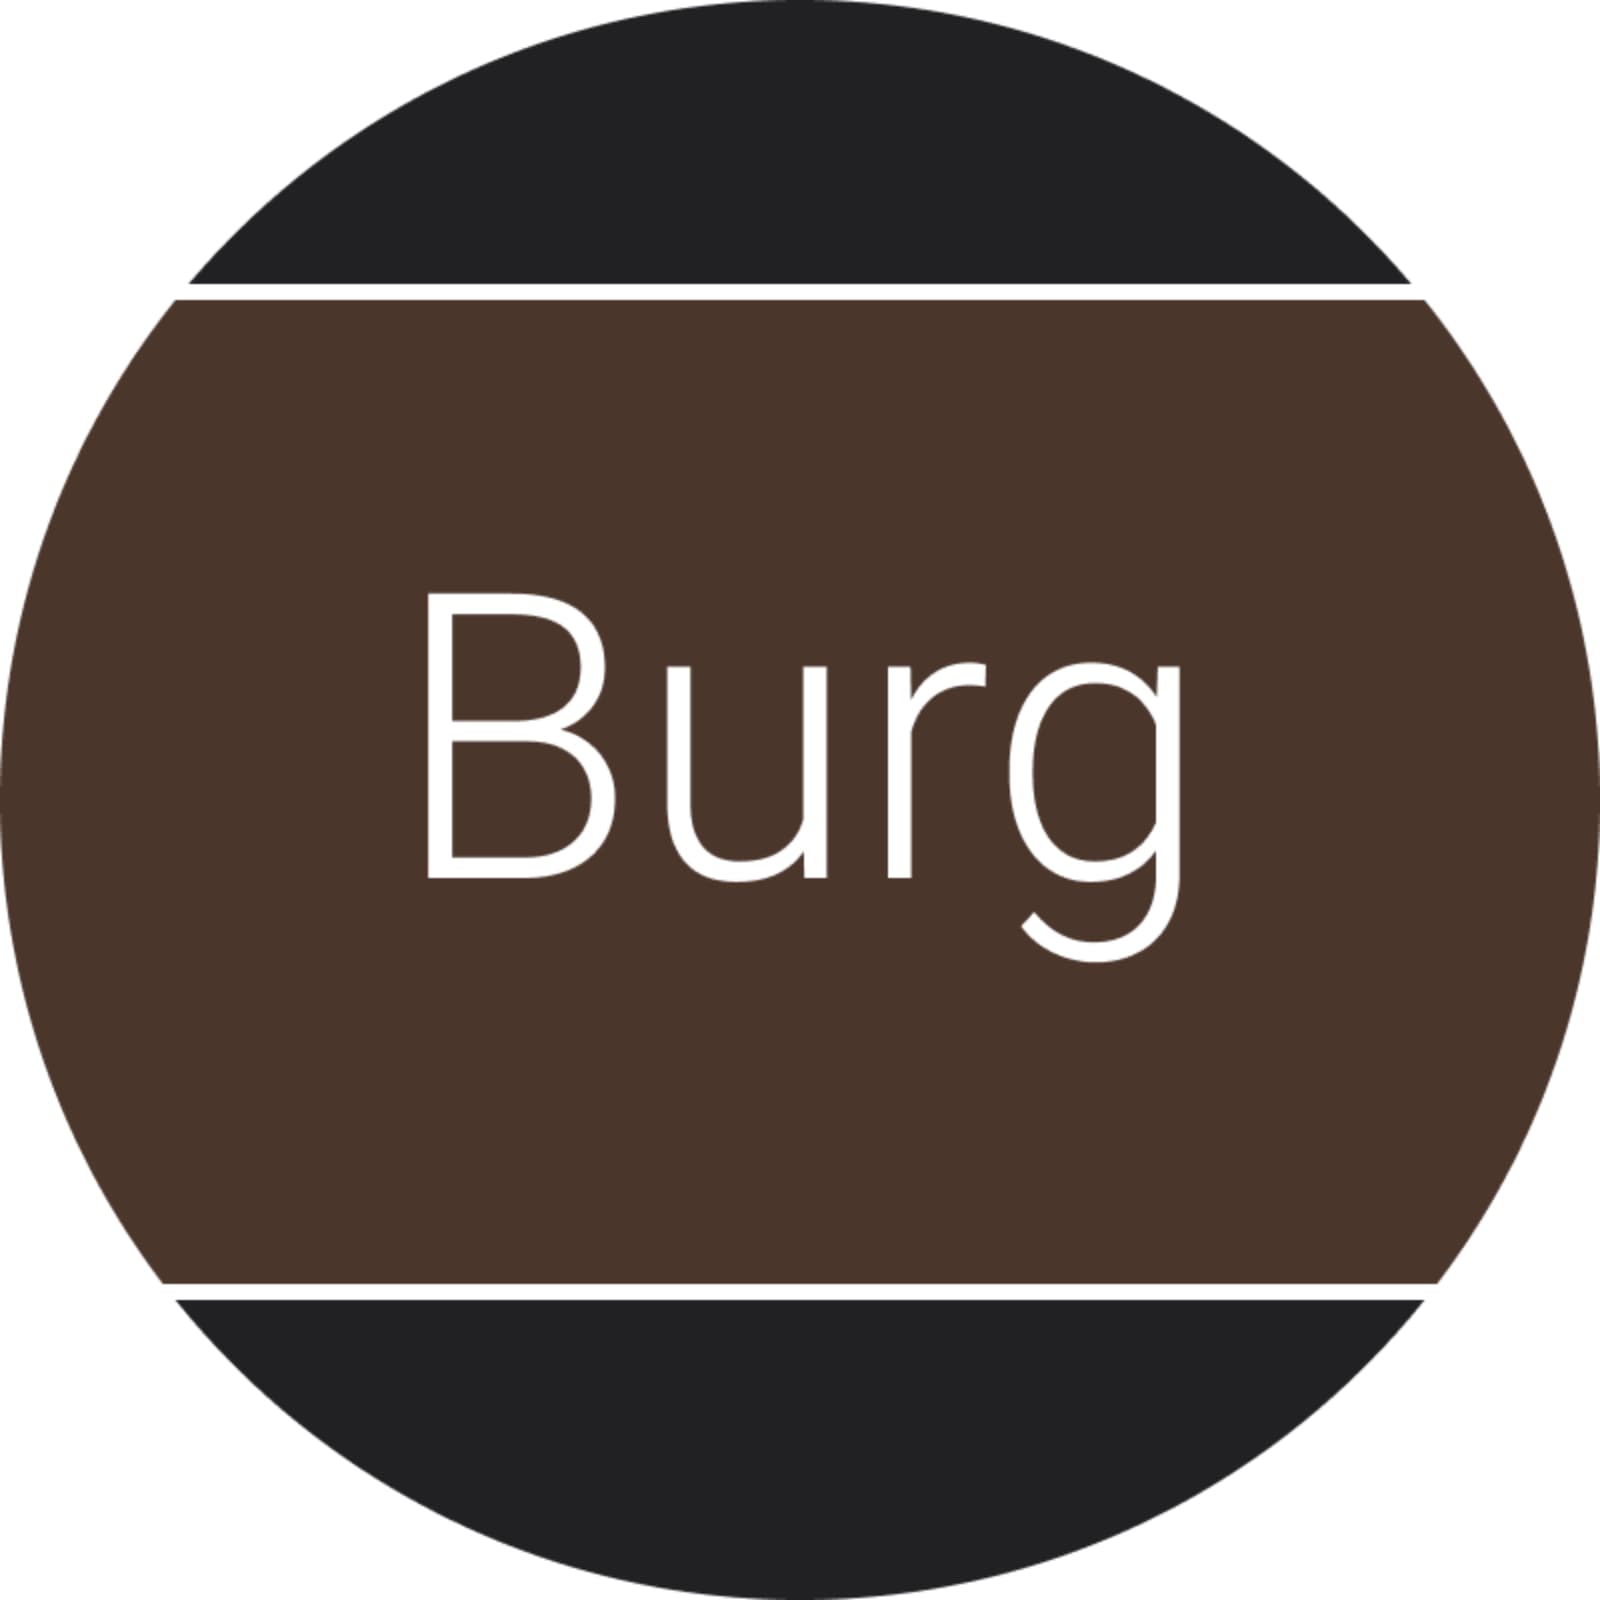 Burg's logo